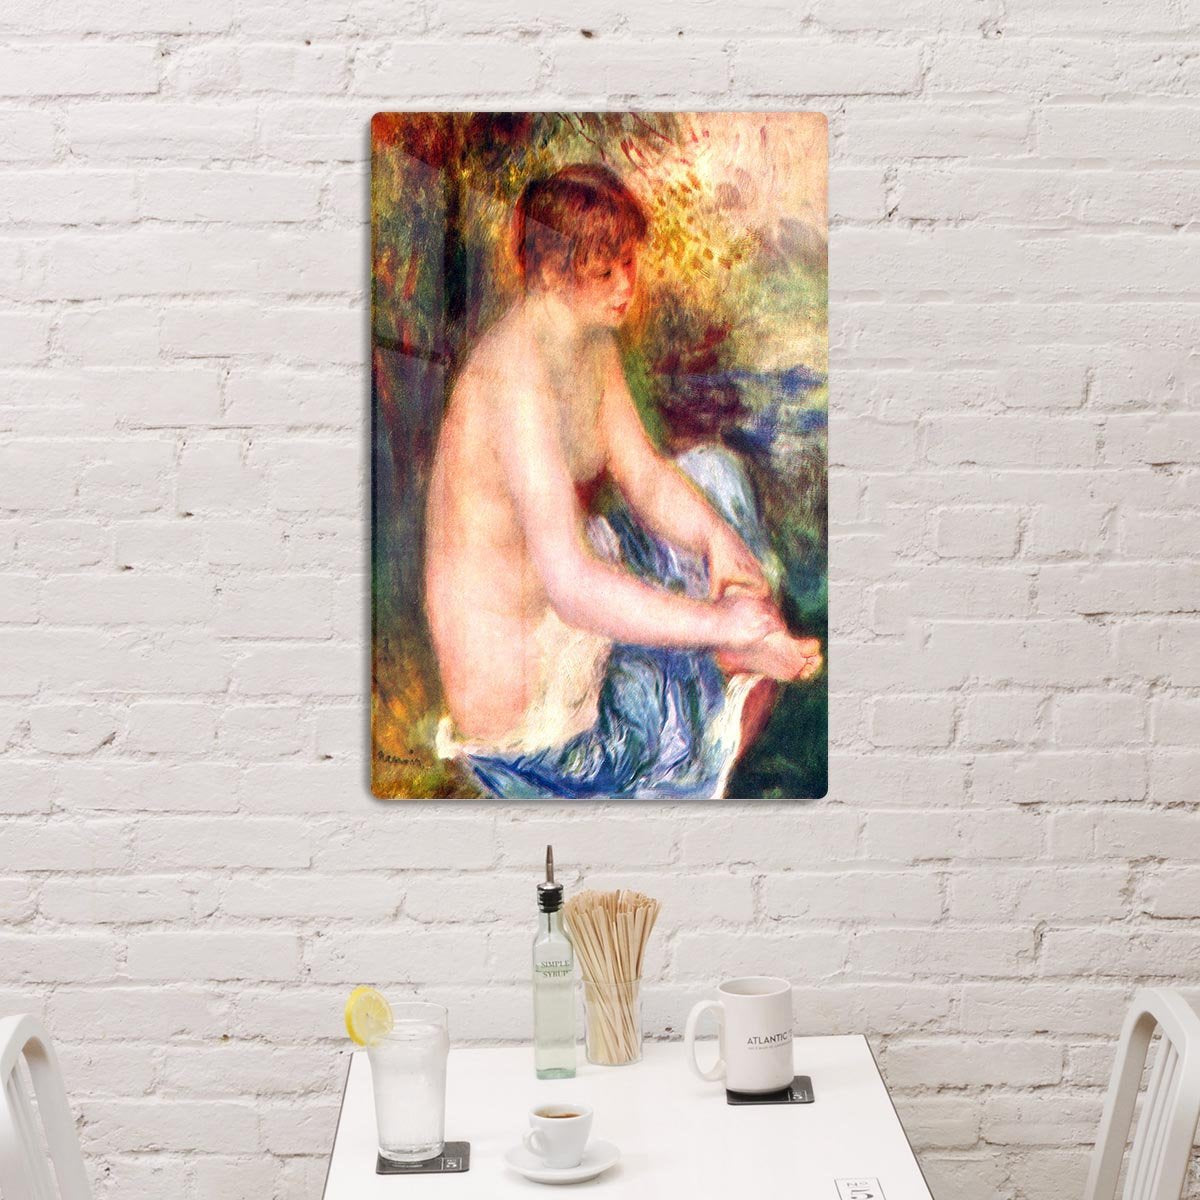 Nude in blue by Renoir HD Metal Print